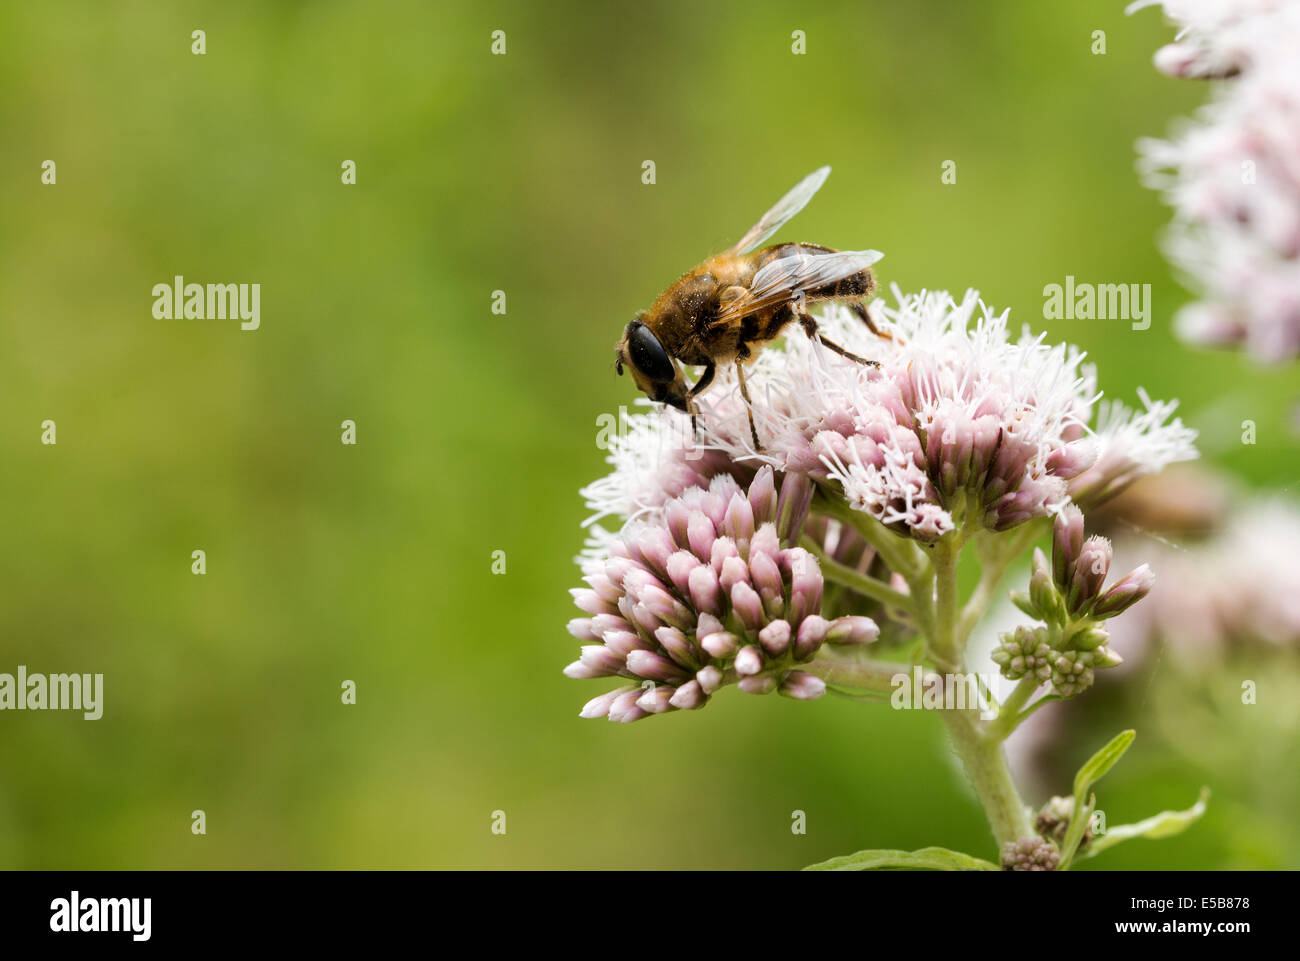 Rosa selvaggio fiore con insetto ape in cerca di miele Foto Stock